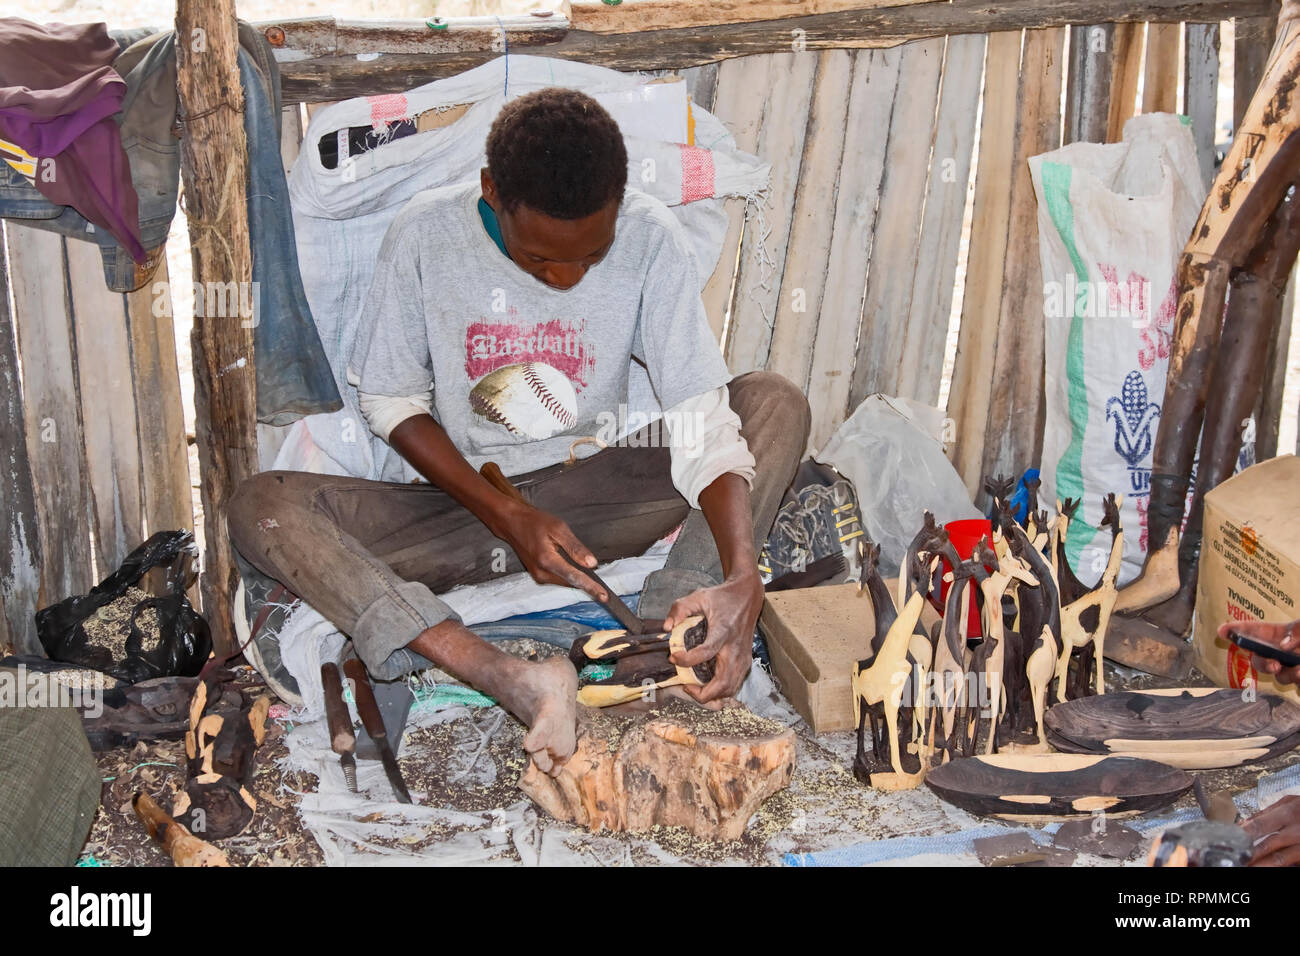 Man carving ironwood ; girafe ; des formes de travail, artisan compétent ; occupation ; travail, art, Tanzanie ; Afrique ; horizontal Banque D'Images